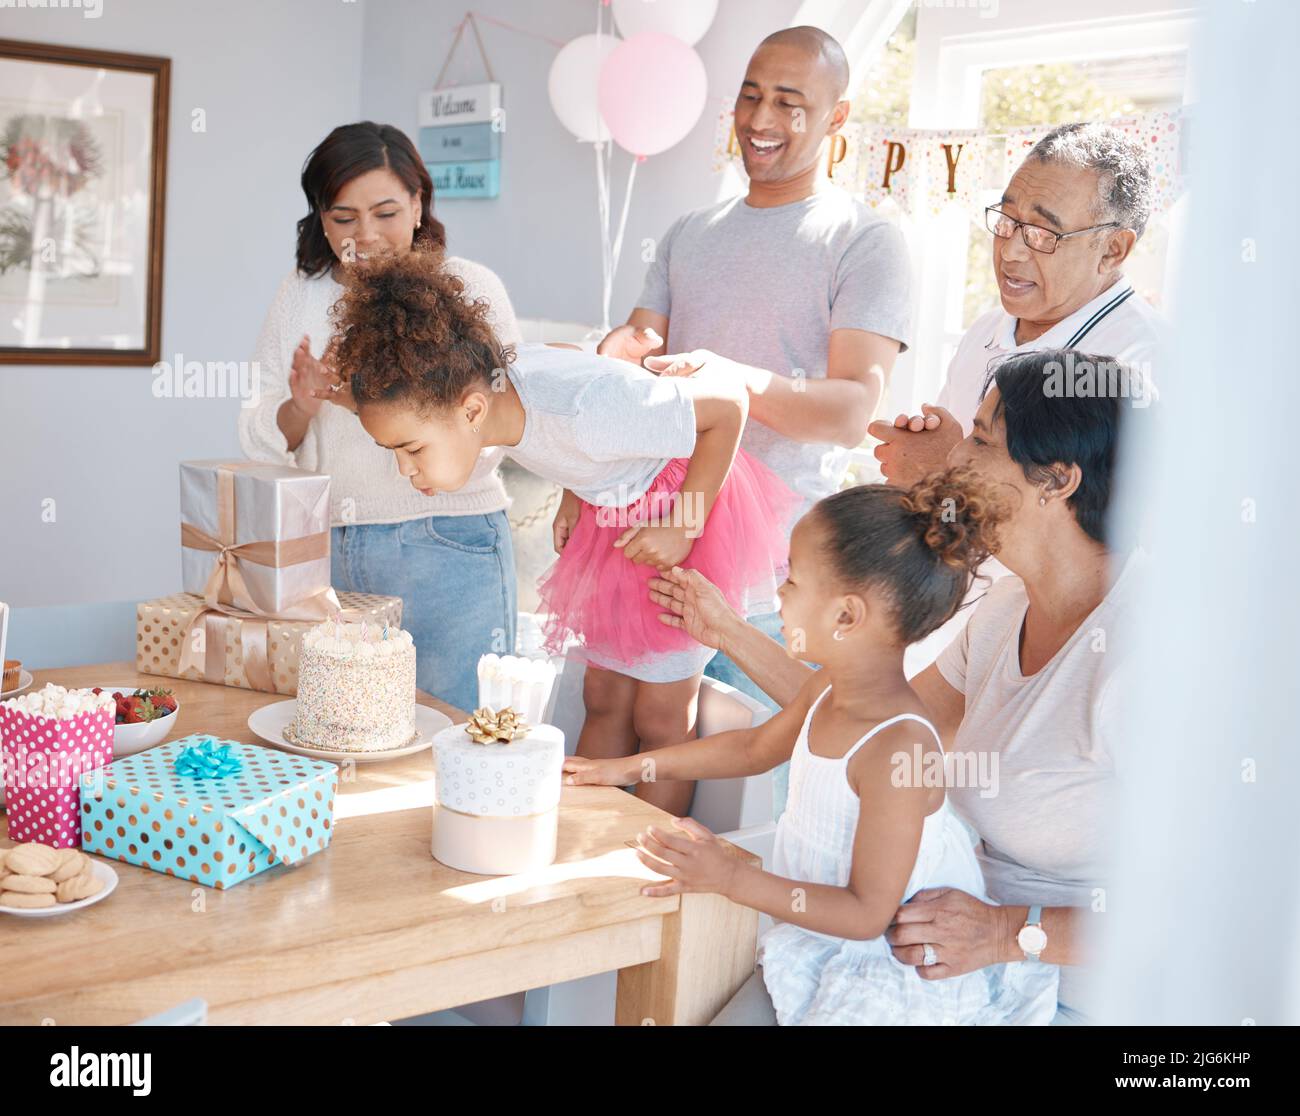 Nos damos vuelta no más viejo con años, pero más nuevo cada día. Fotografía de una familia feliz celebrando un cumpleaños en casa. Foto de stock